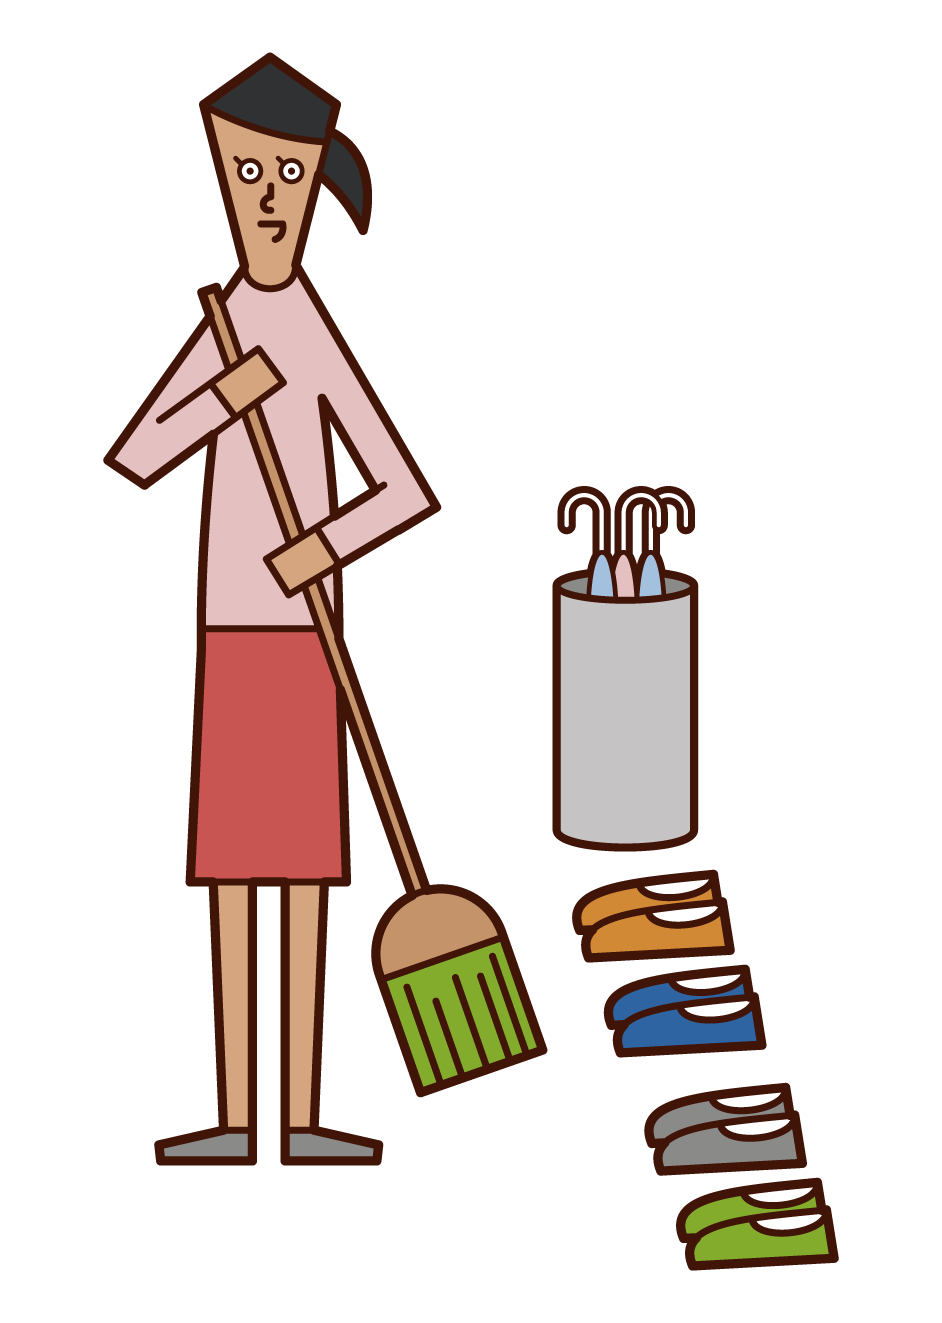 玄関の掃除をする人 女性 のイラスト フリーイラスト素材 Kukukeke ククケケ